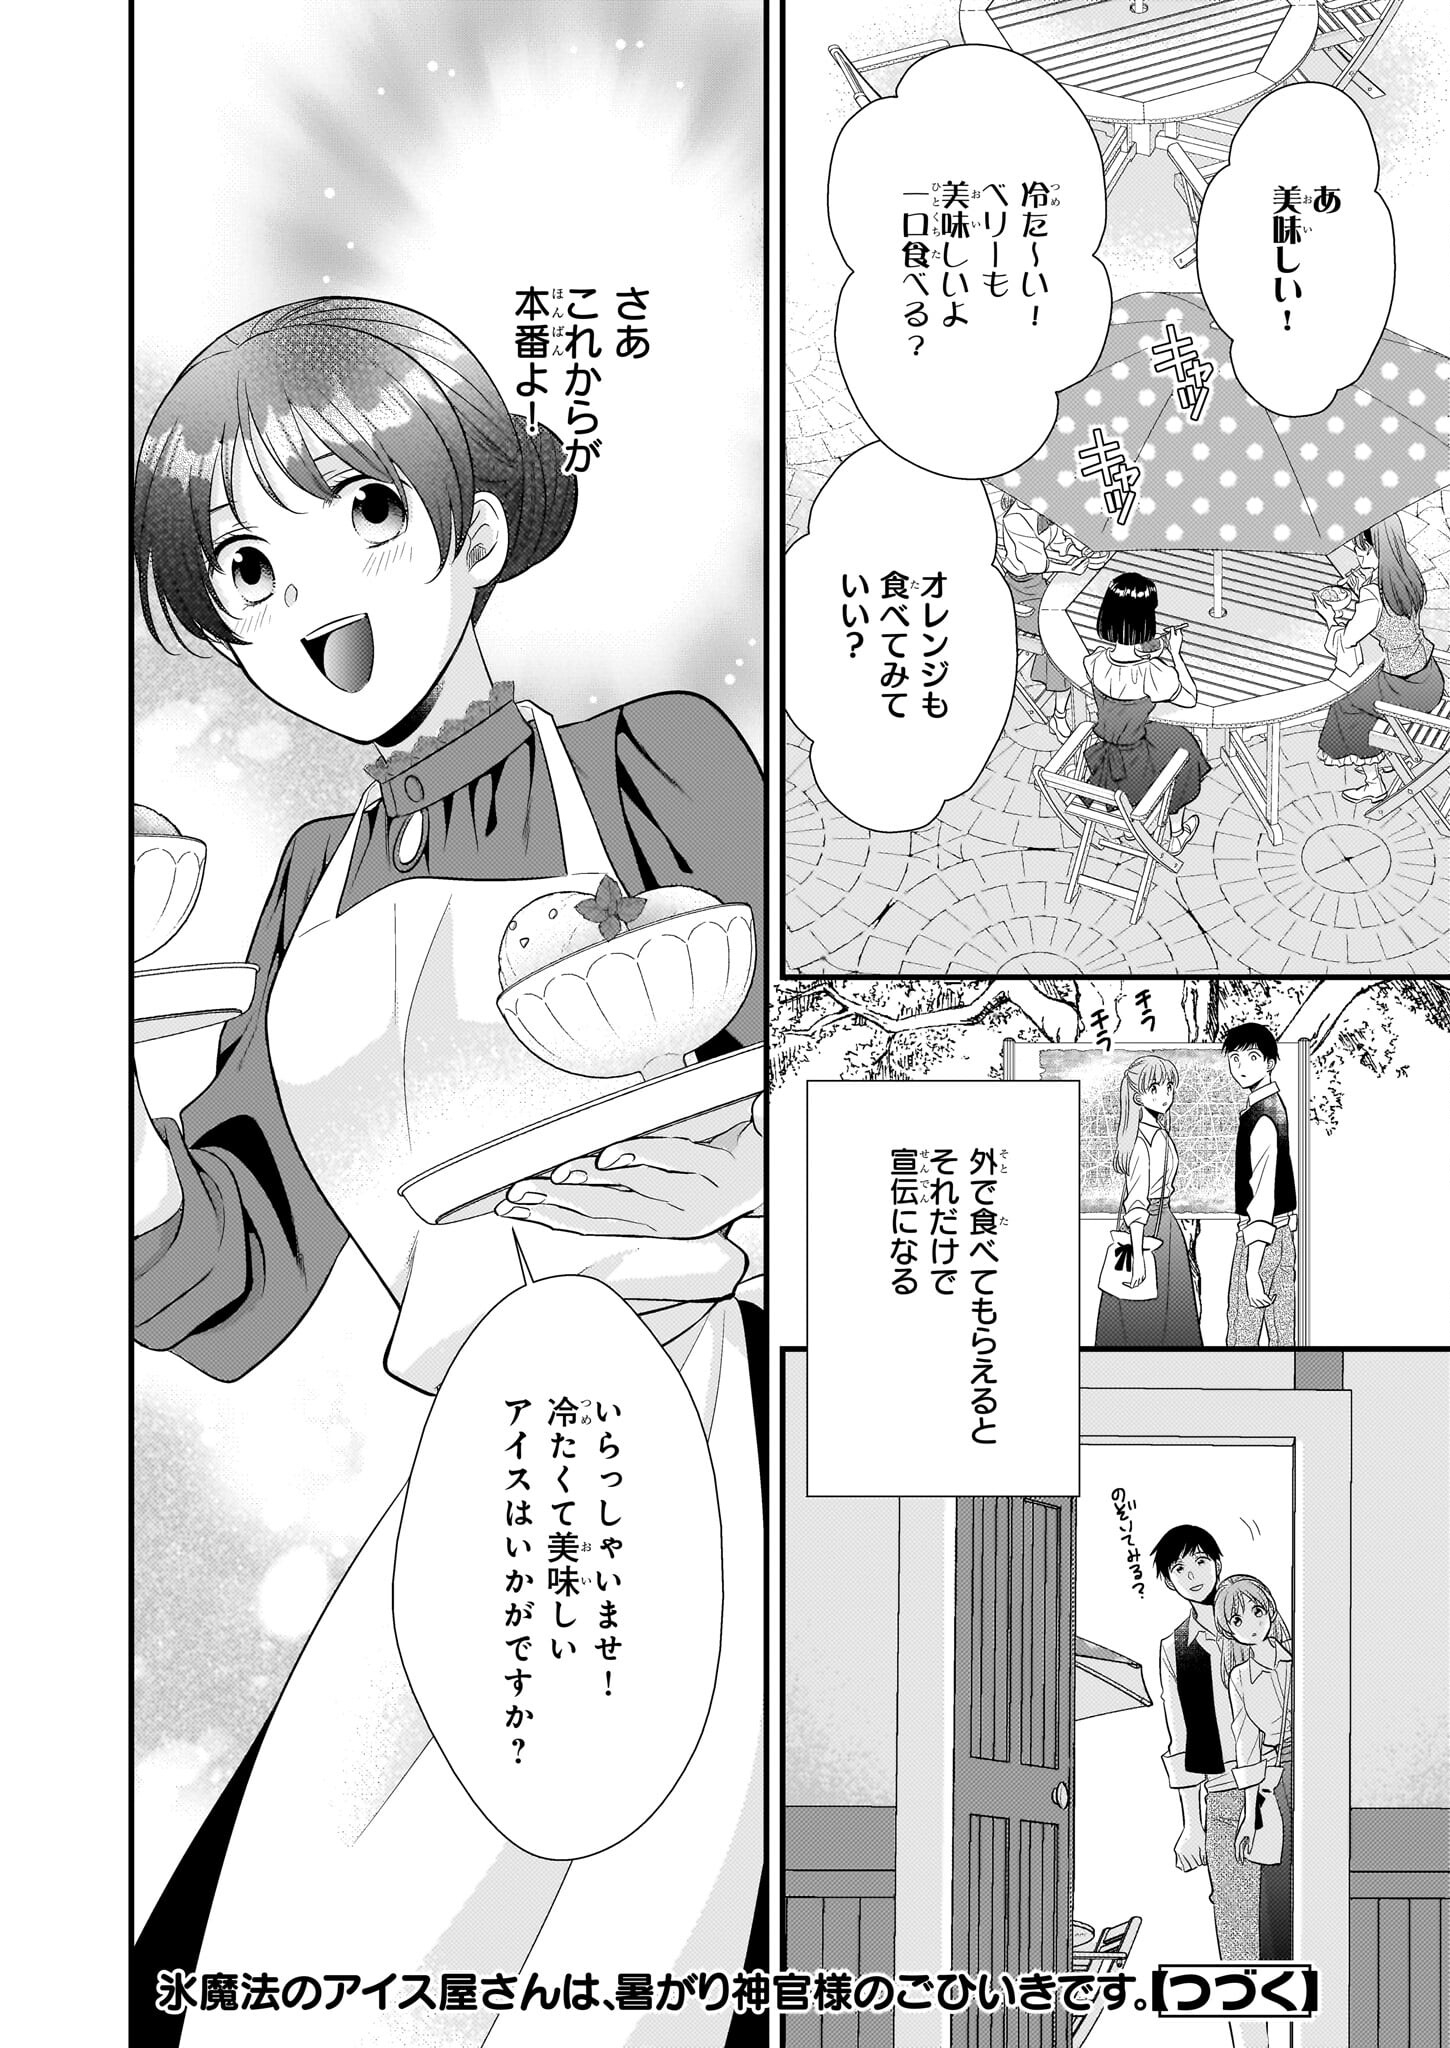 Akuyaku Reijou Level 99: Watashi wa UraBoss desu ga Maou de wa arimasen - Chapter 17.2 - Page 20